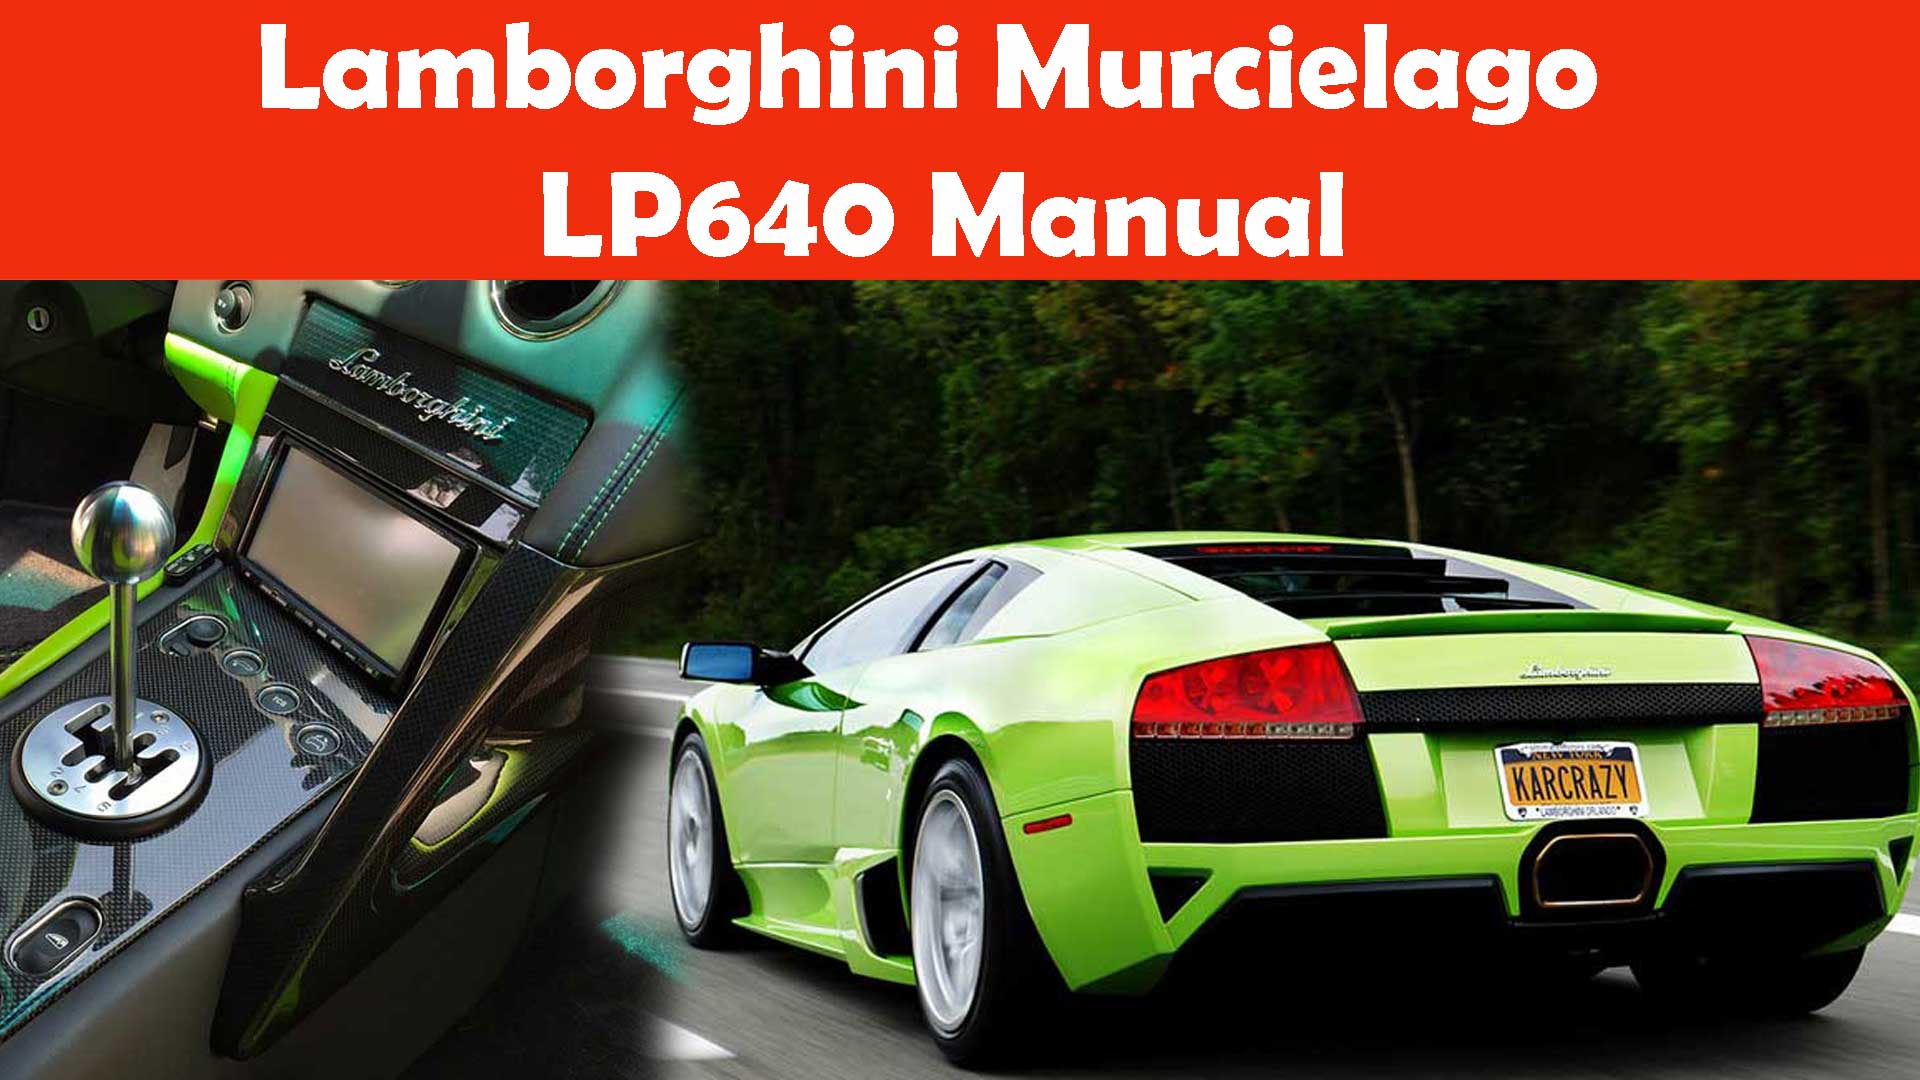 Lamborghini Murcielago LP640 Manual